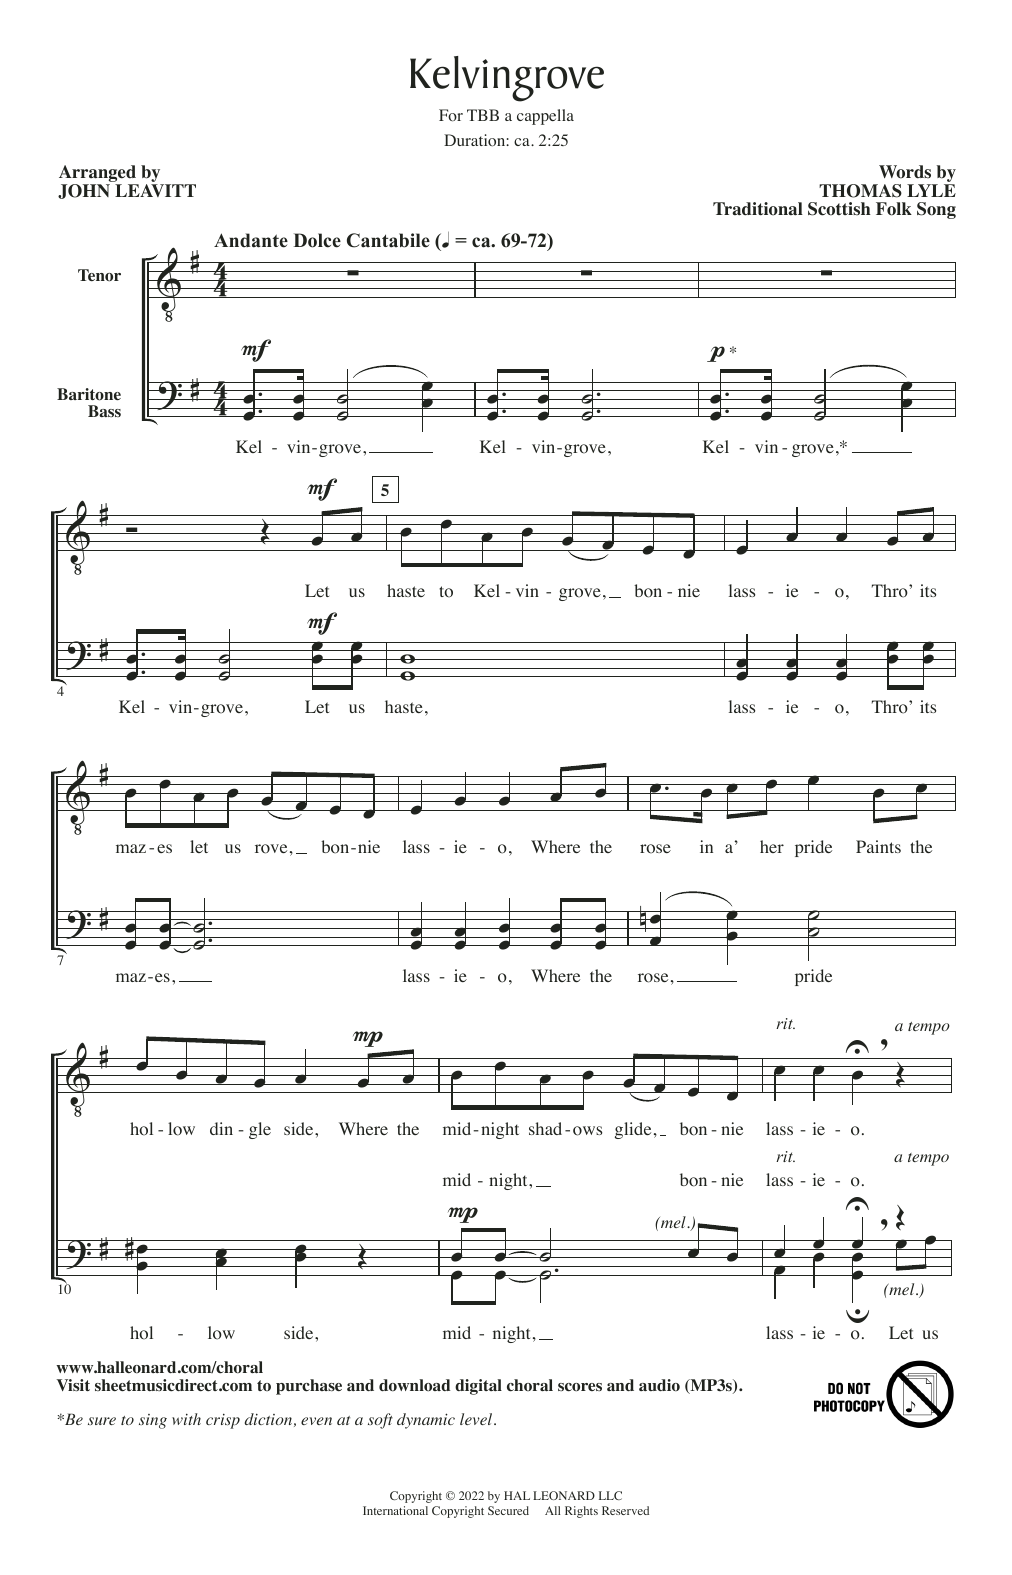 Traditional Scottish Folk Song Kelvingrove (arr. John Leavitt) Sheet Music Notes & Chords for TBB Choir - Download or Print PDF